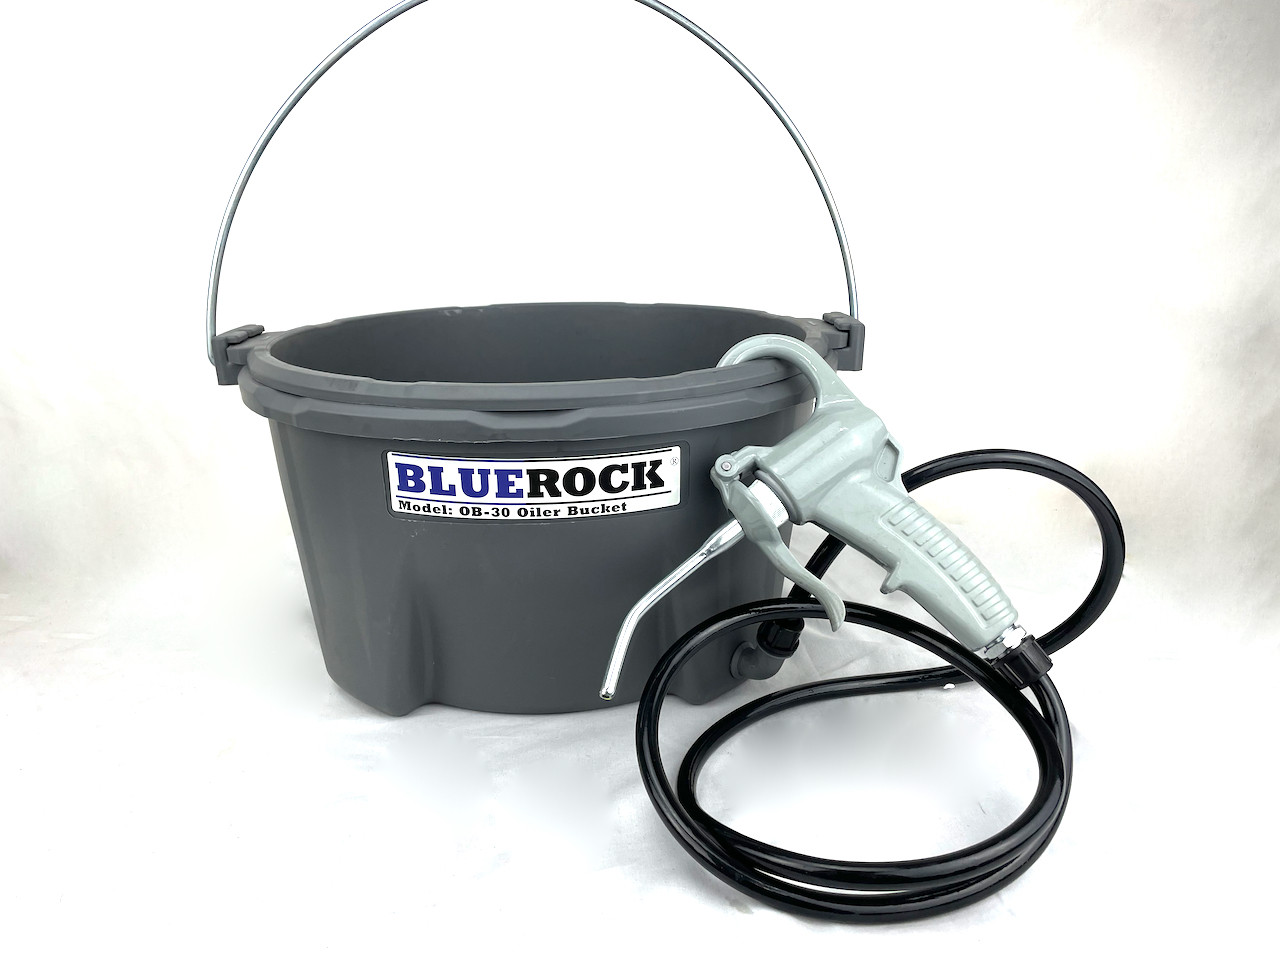 BLUEROCK OB-22 Hand Held Oiler Bucket for Pipe Threading Fits Ridgid 418 300